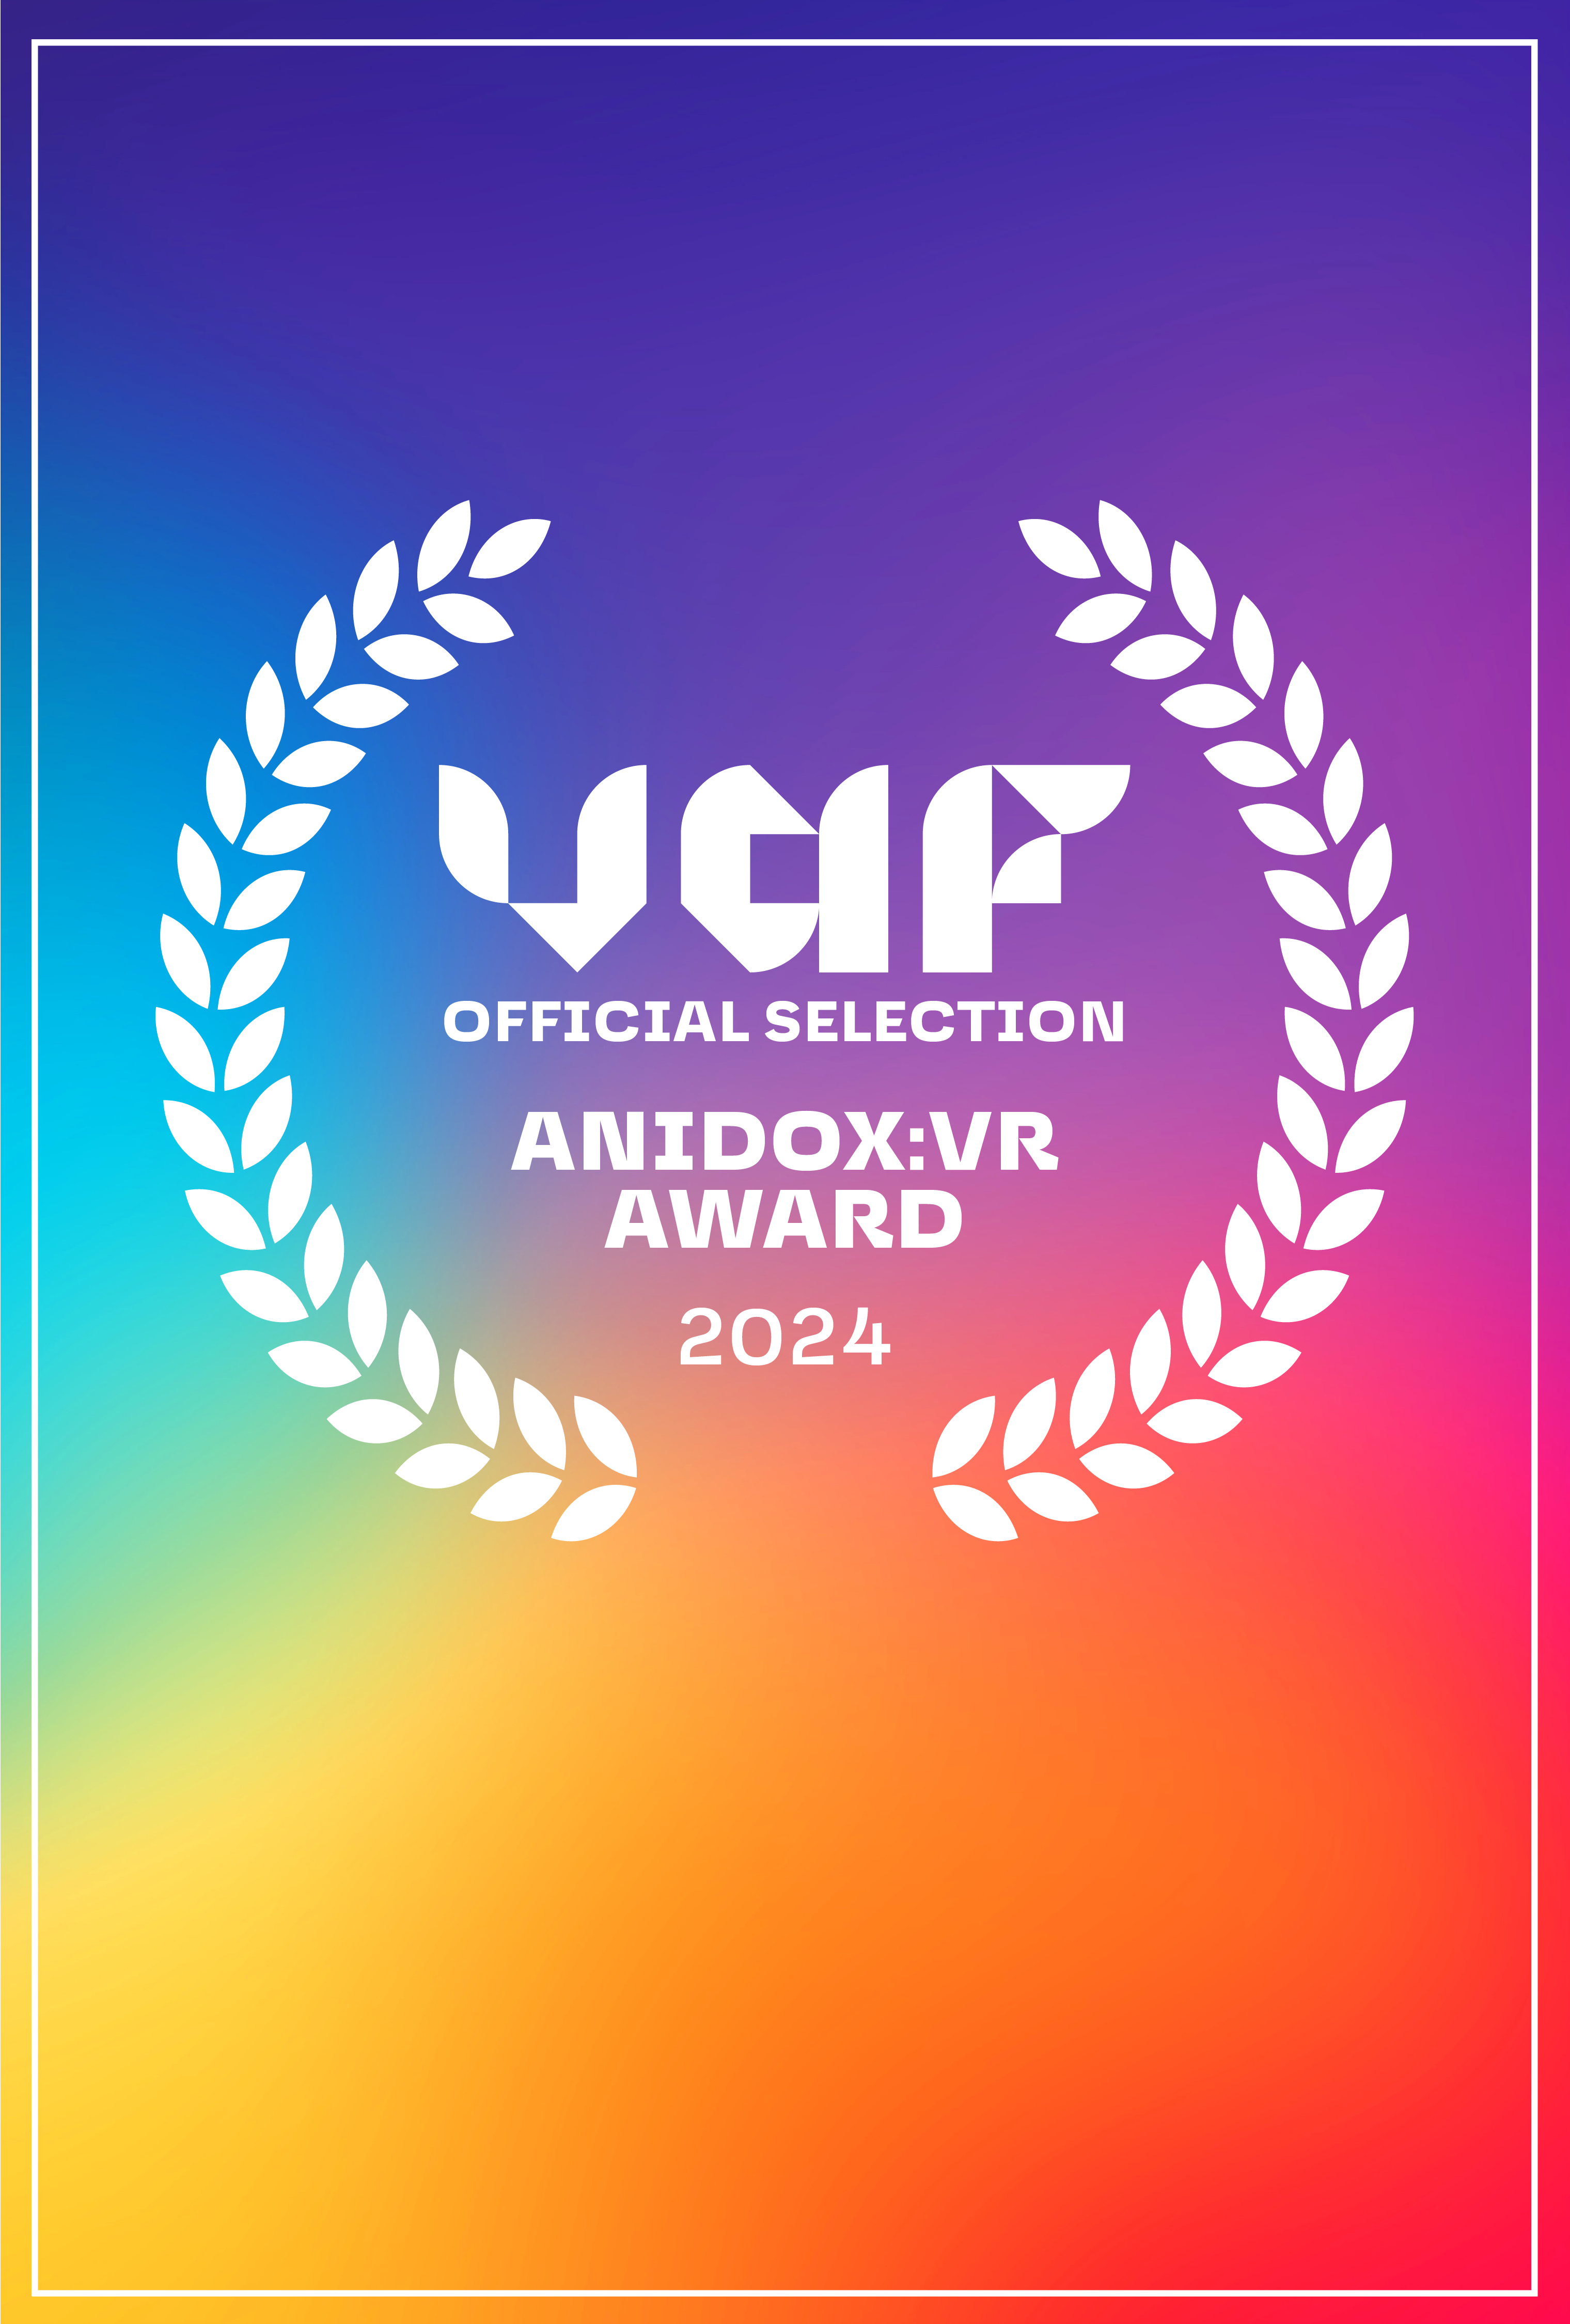 Laurel på en regnbue baggrund med teksten Anidox:VR Award 2024